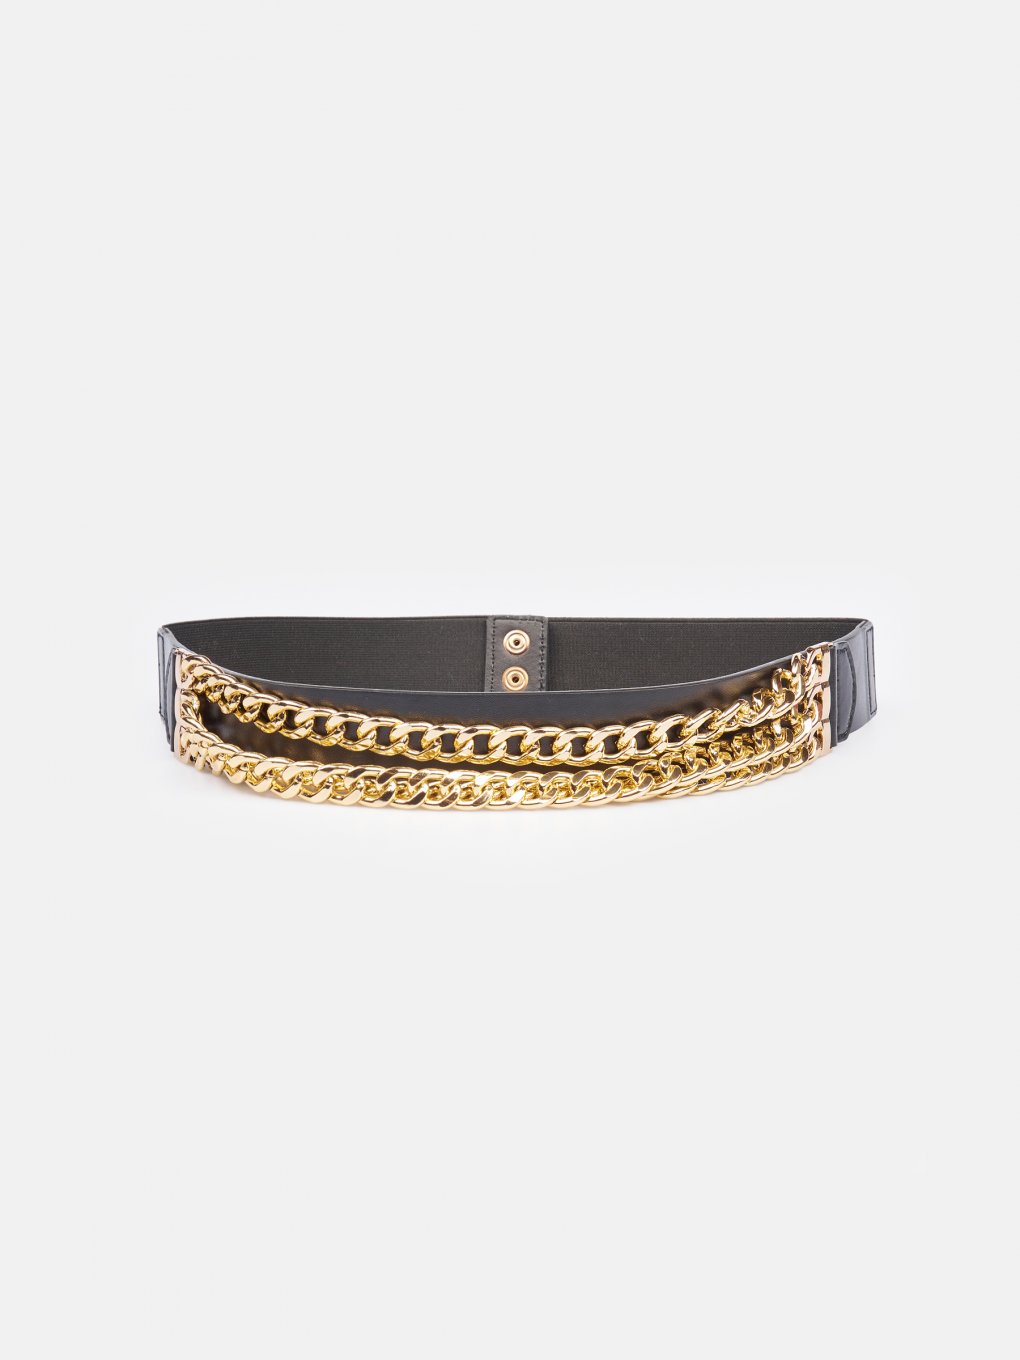 Wide waist belt with decorative chain